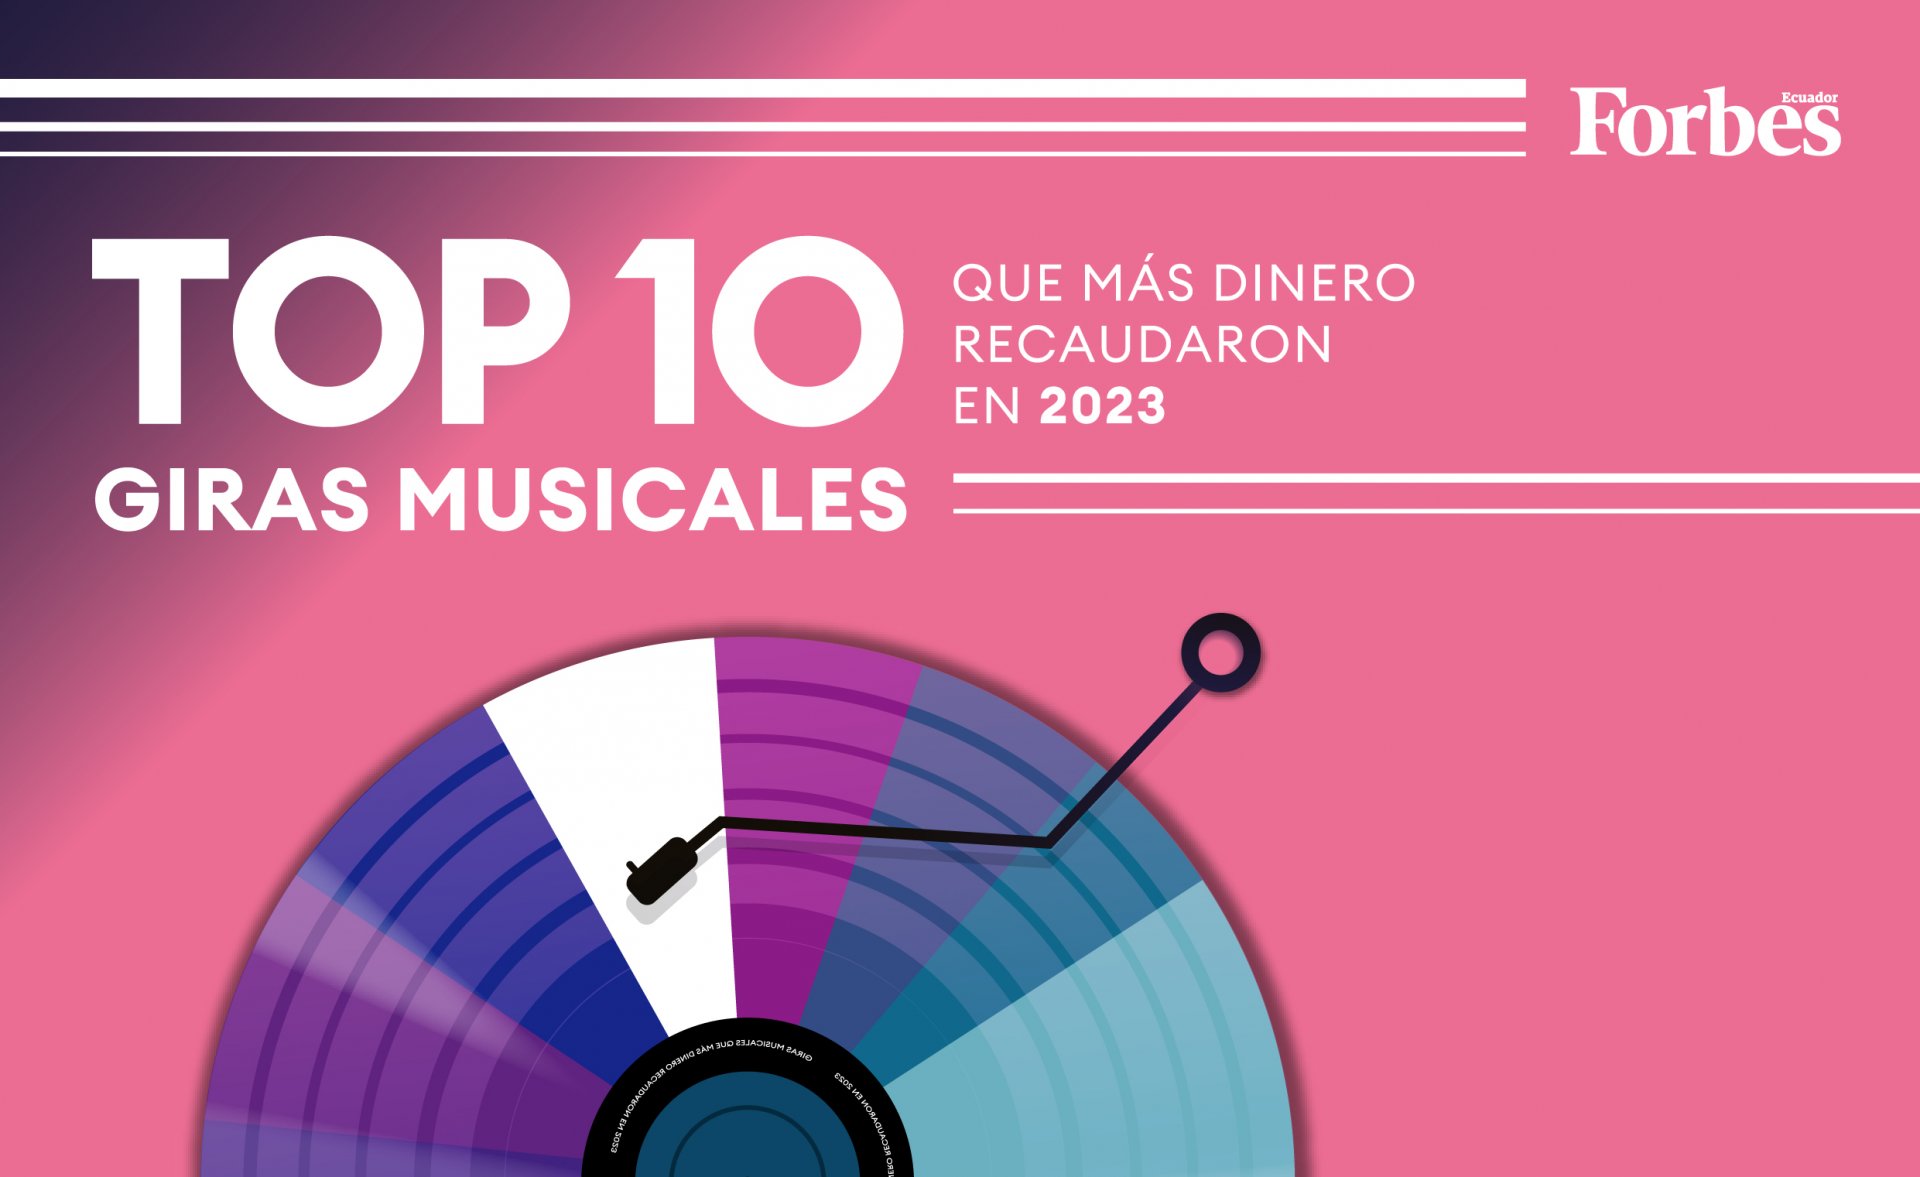 10 Grandes artistas que siguen apostando por el Vinilo en este 2023 –  Ballena Records